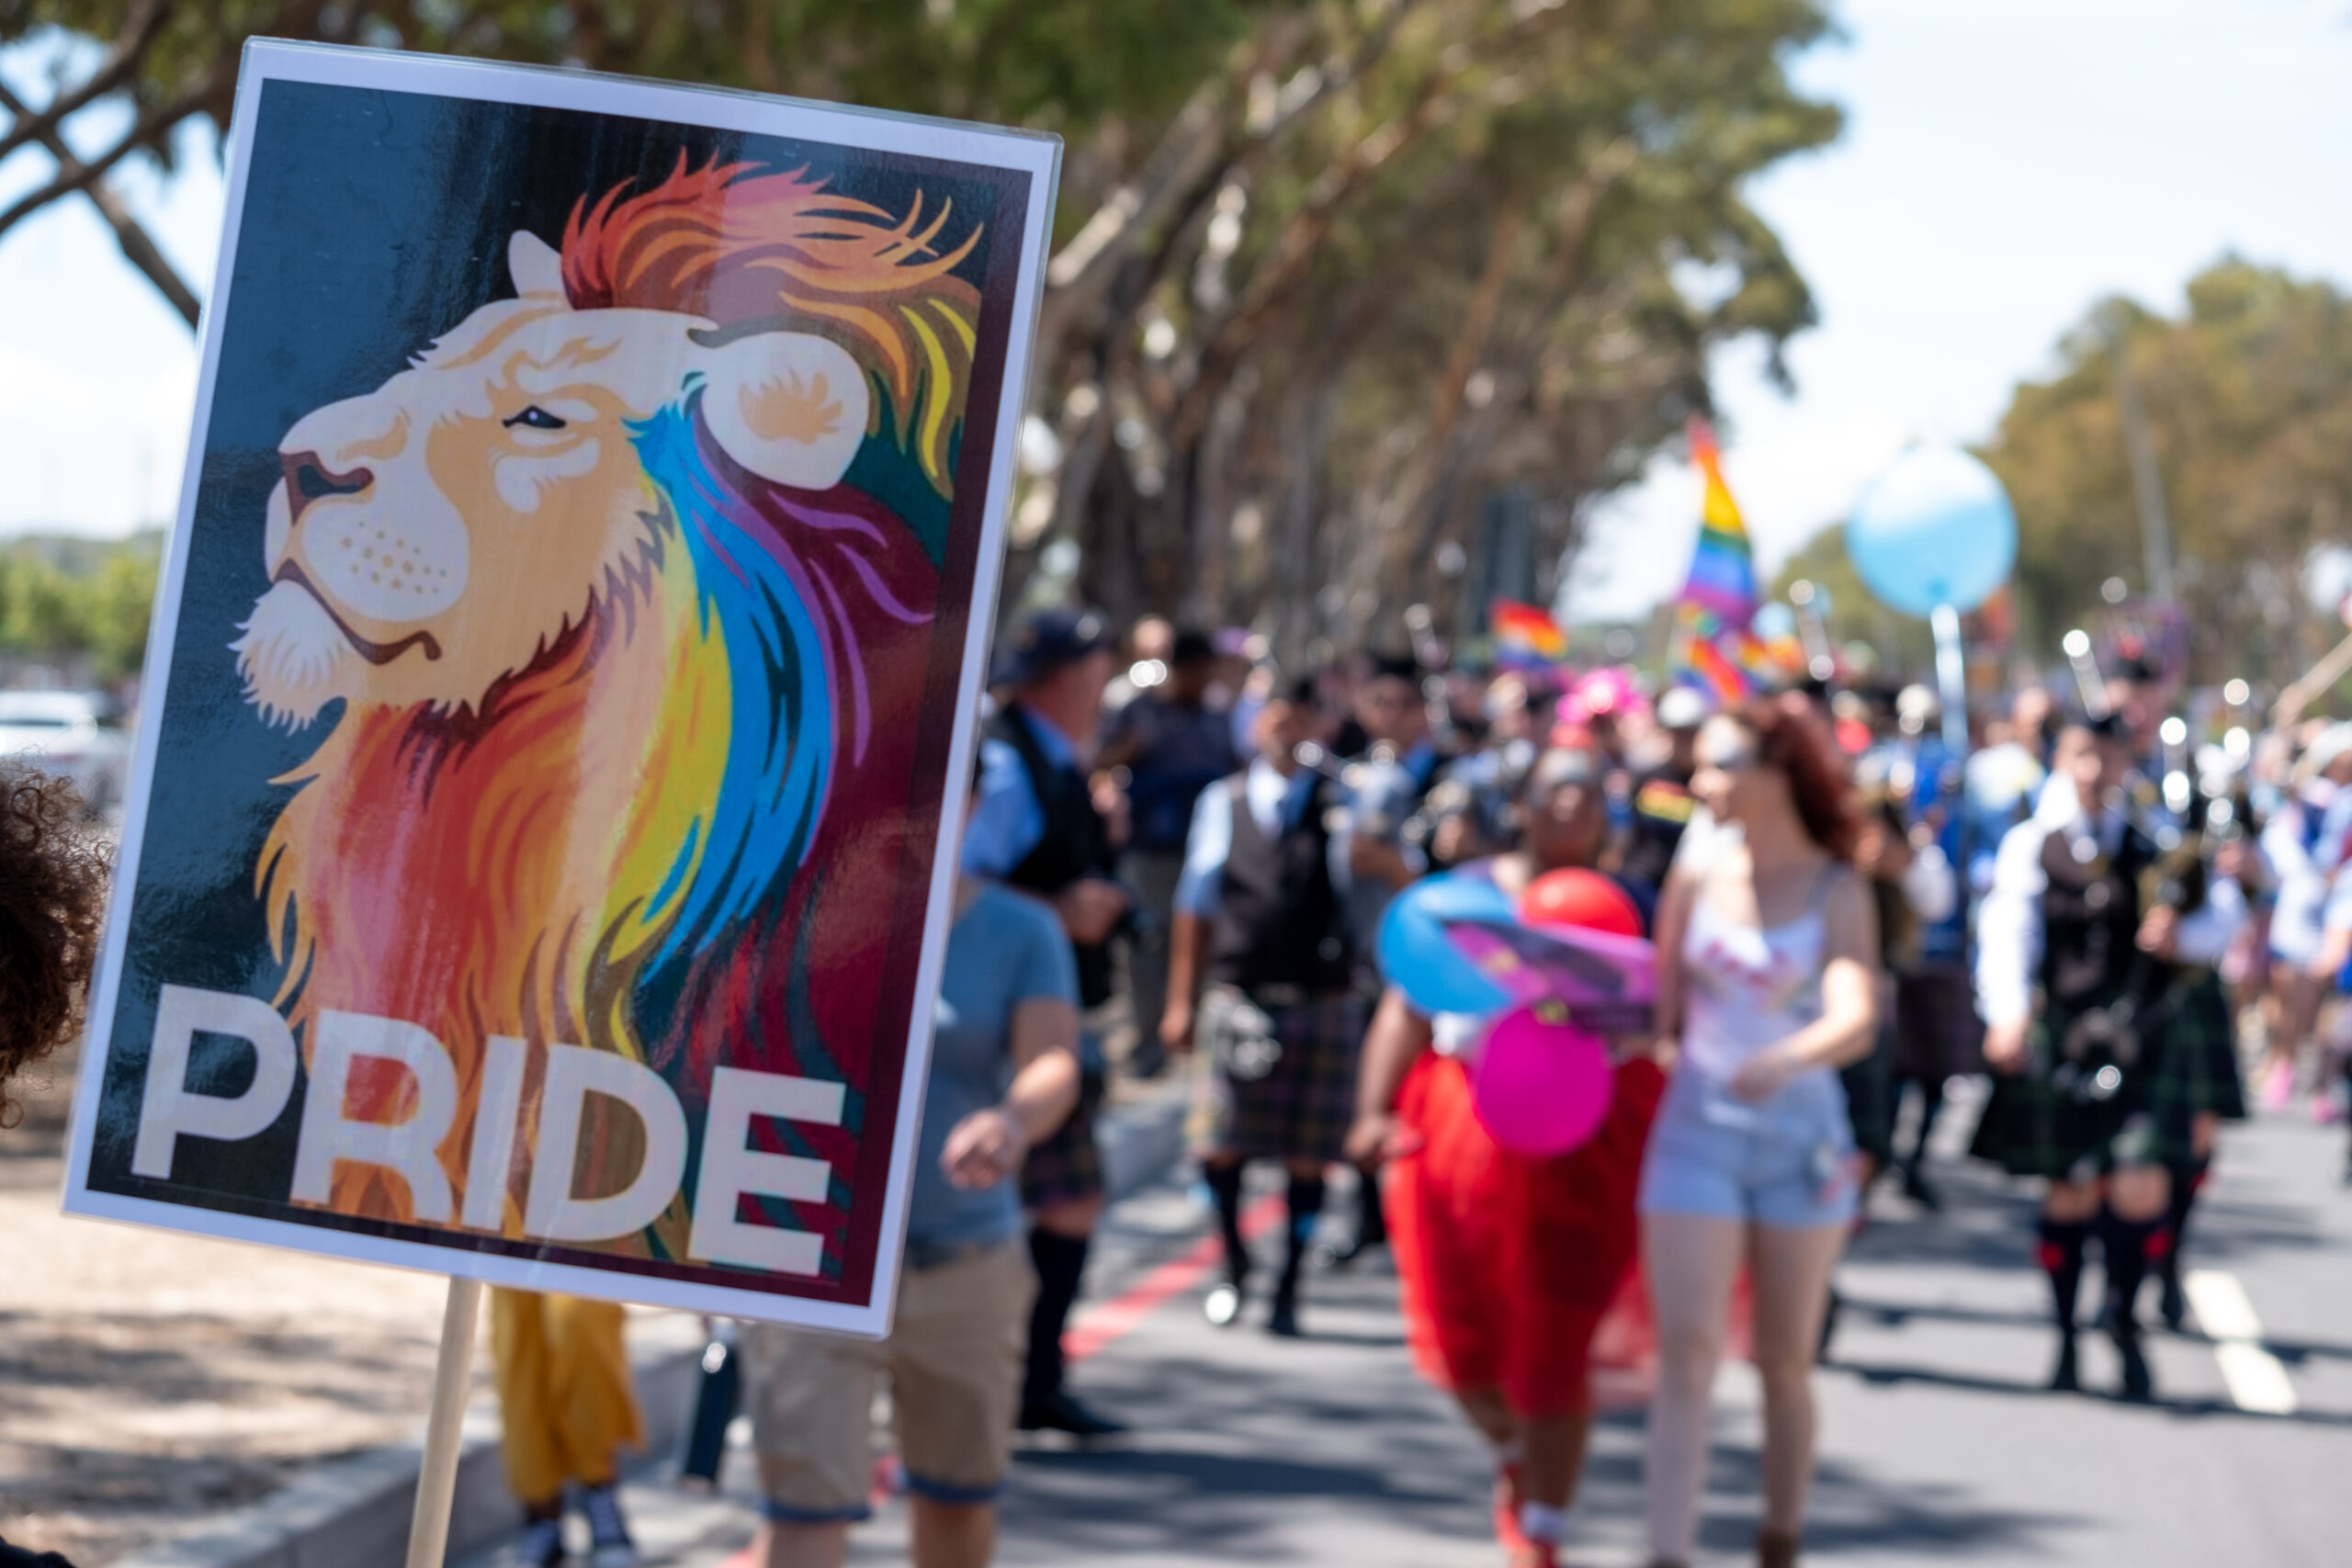 Cape Town Pride (Photo Credit: Chillimix)